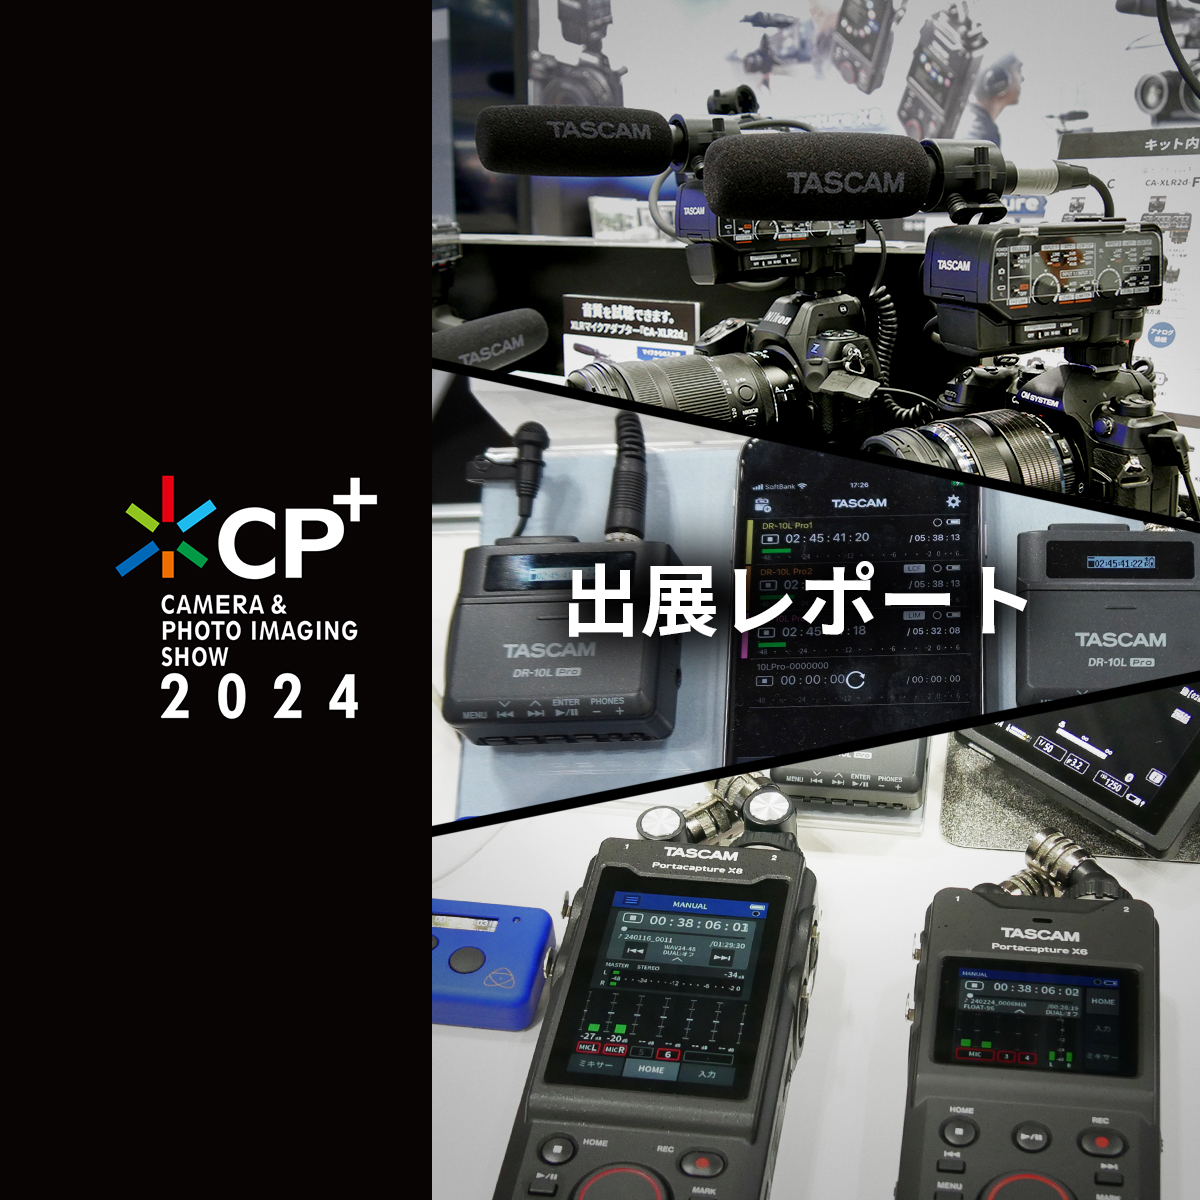 音割れしない音声レコーダーや、映像と音声の同期が手軽なカメラ用マイクアダプターなど動画音声機材を展示〈 CP+2024展示会レポート 〉